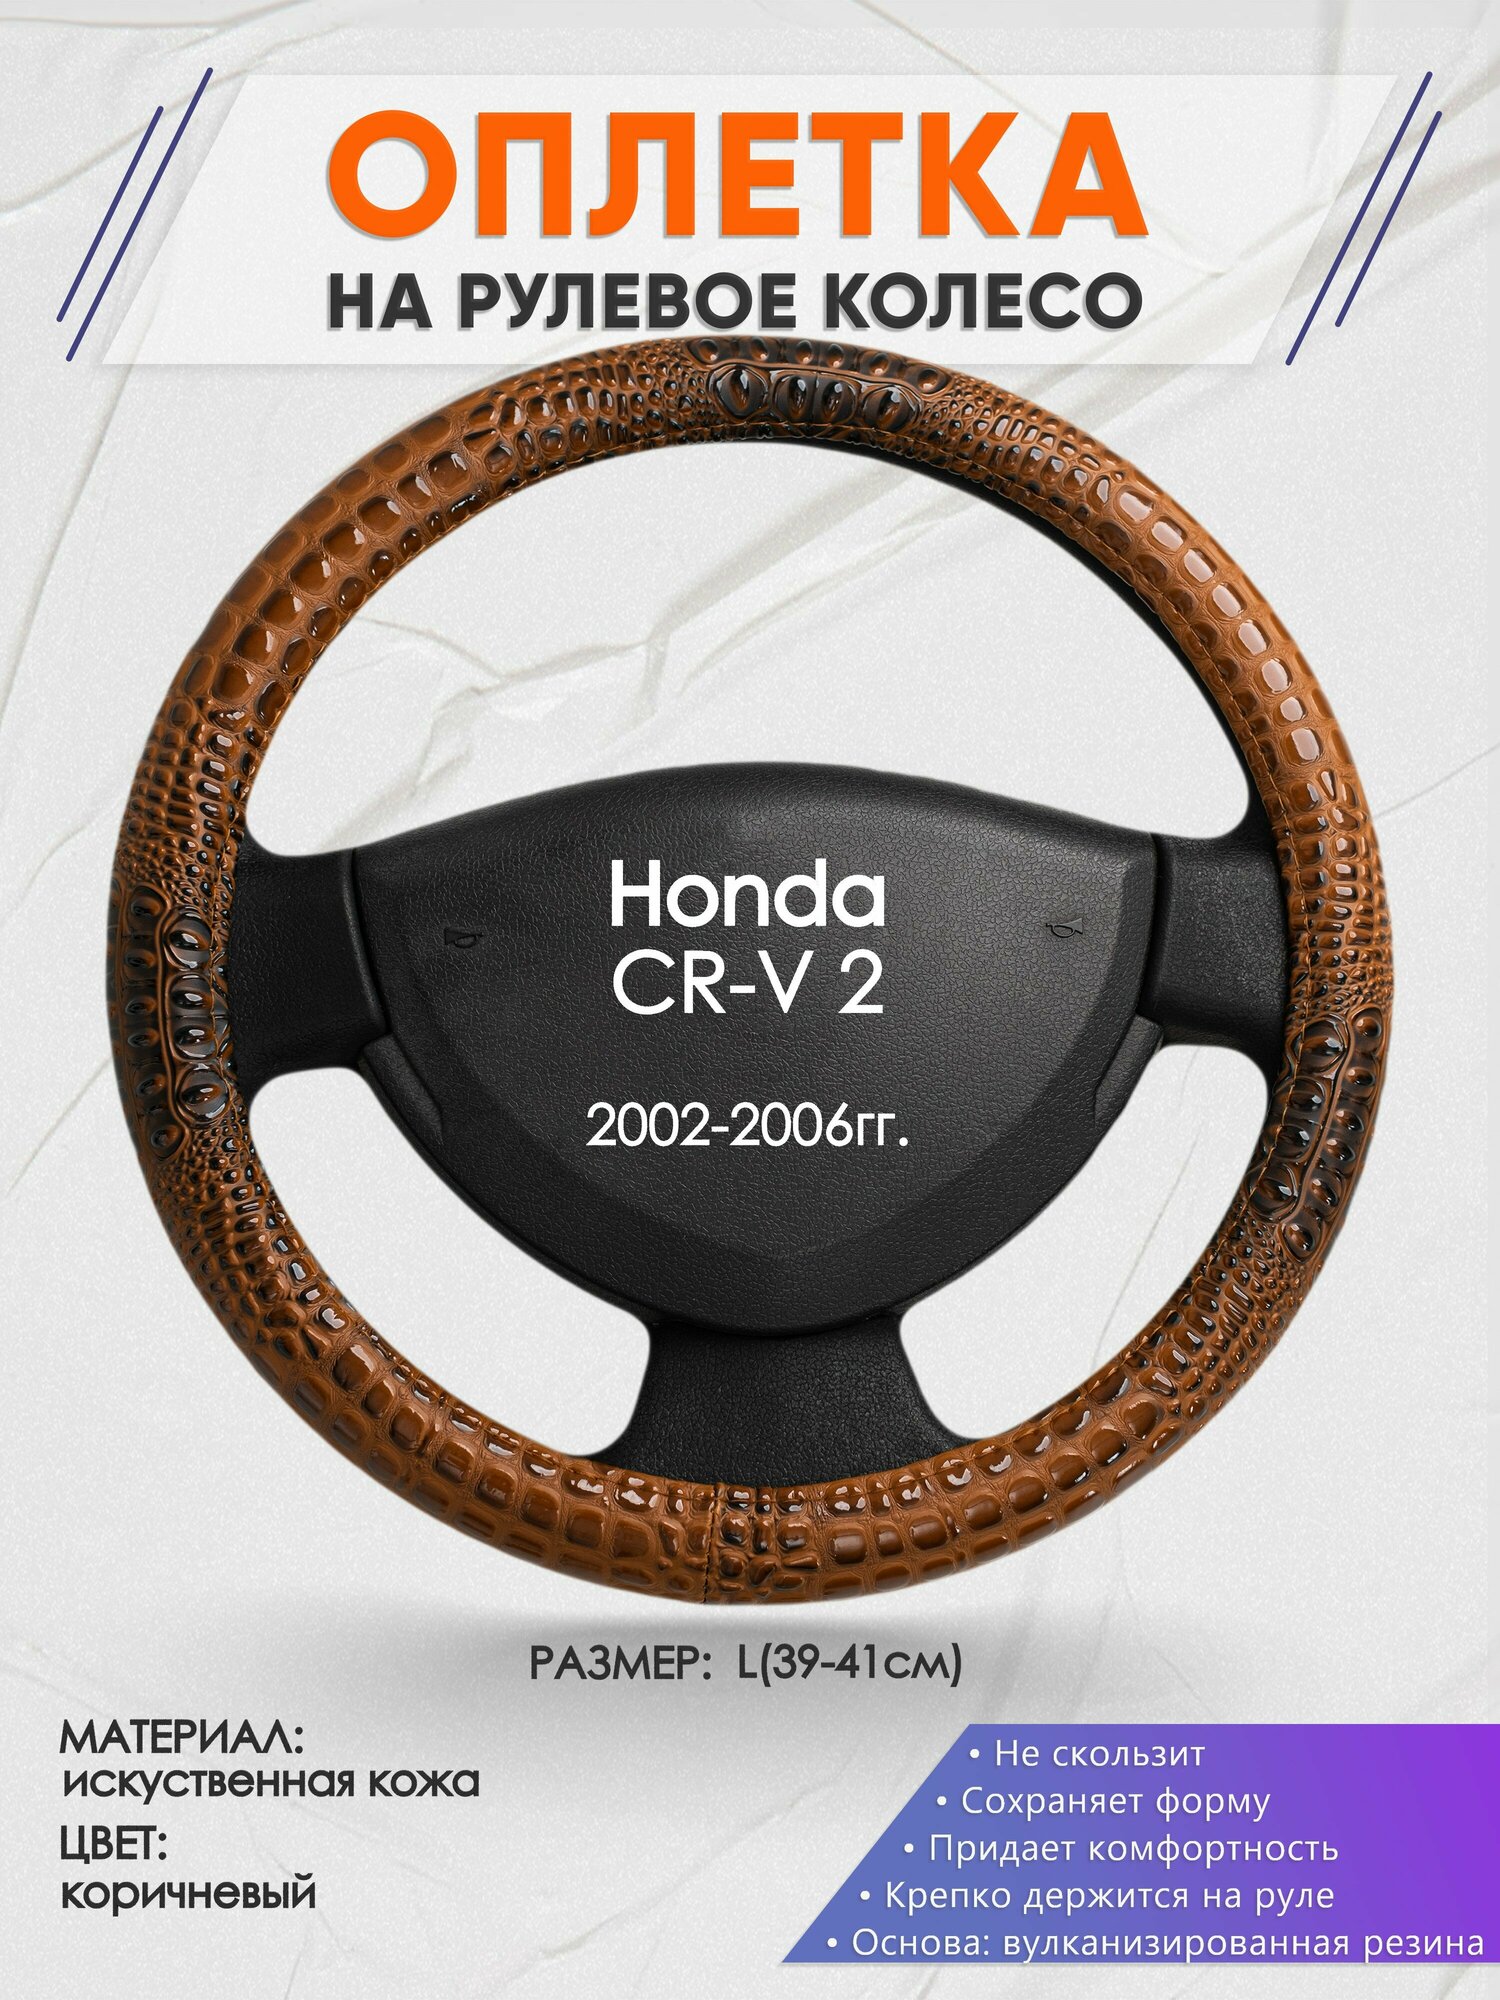 Оплетка на руль для Honda CR-V 2(Хонда срв 2) 2002-2006, L(39-41см), Искусственная кожа 14